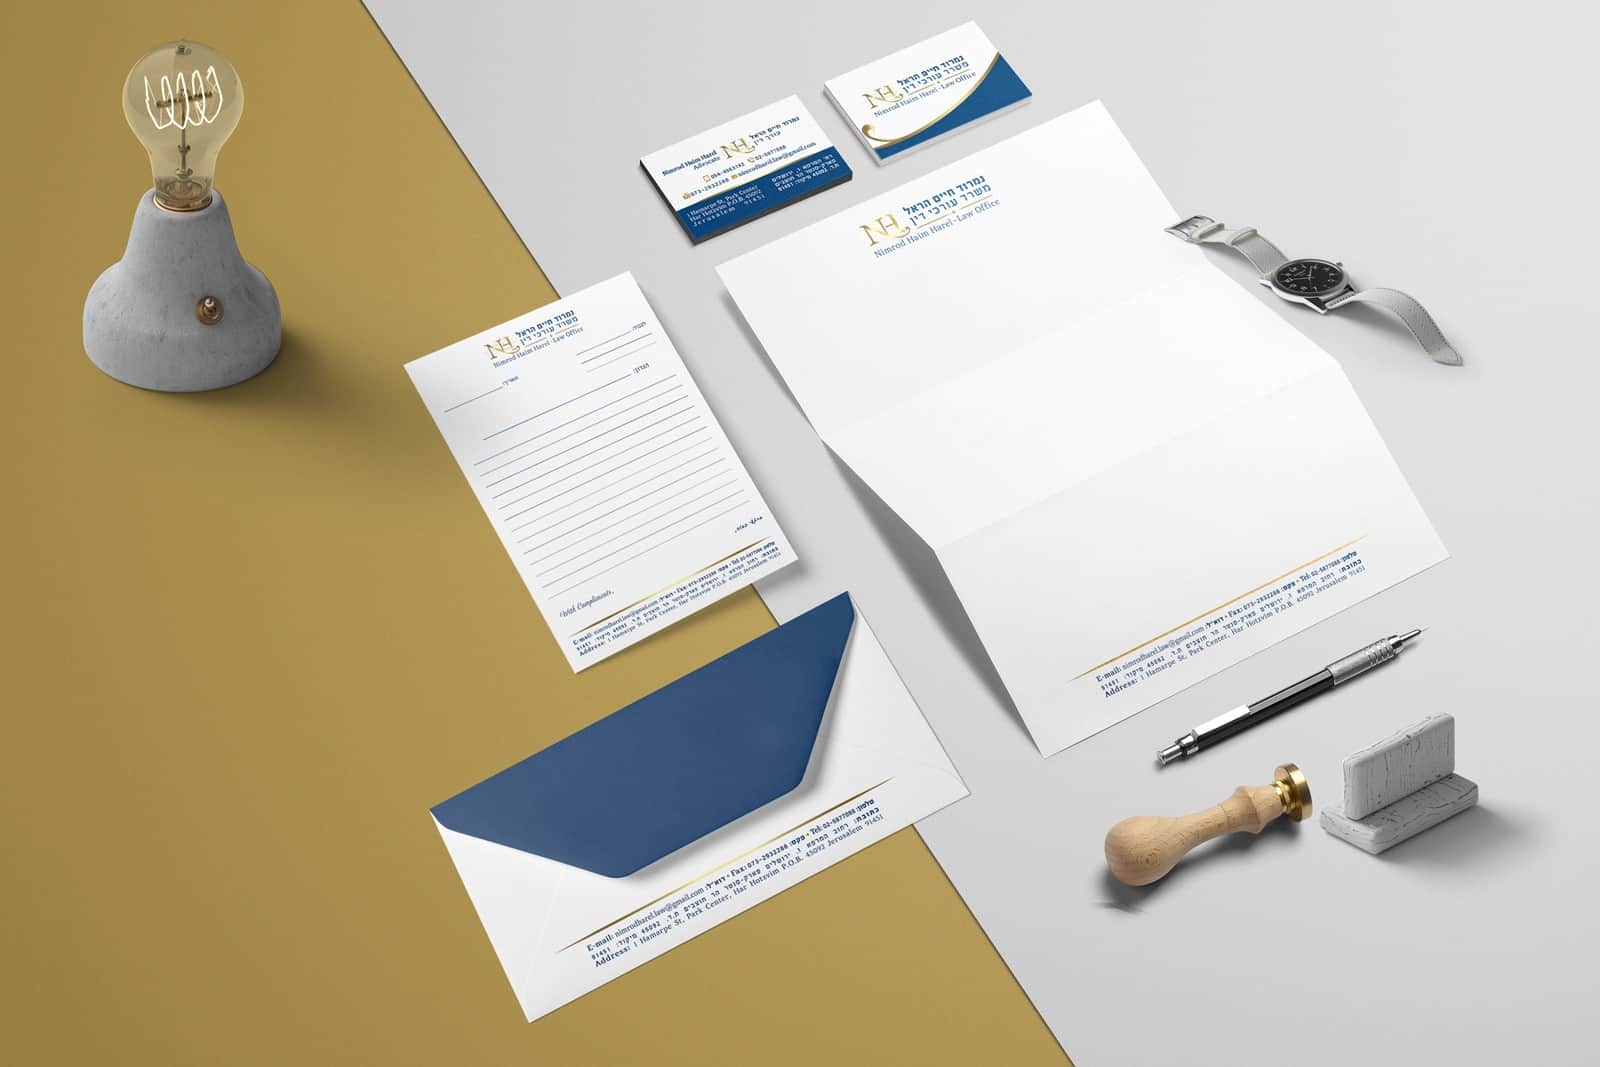 עיצוב לוגו לעורכי דין ועיצוב ניירת משרדית לעורכי דין